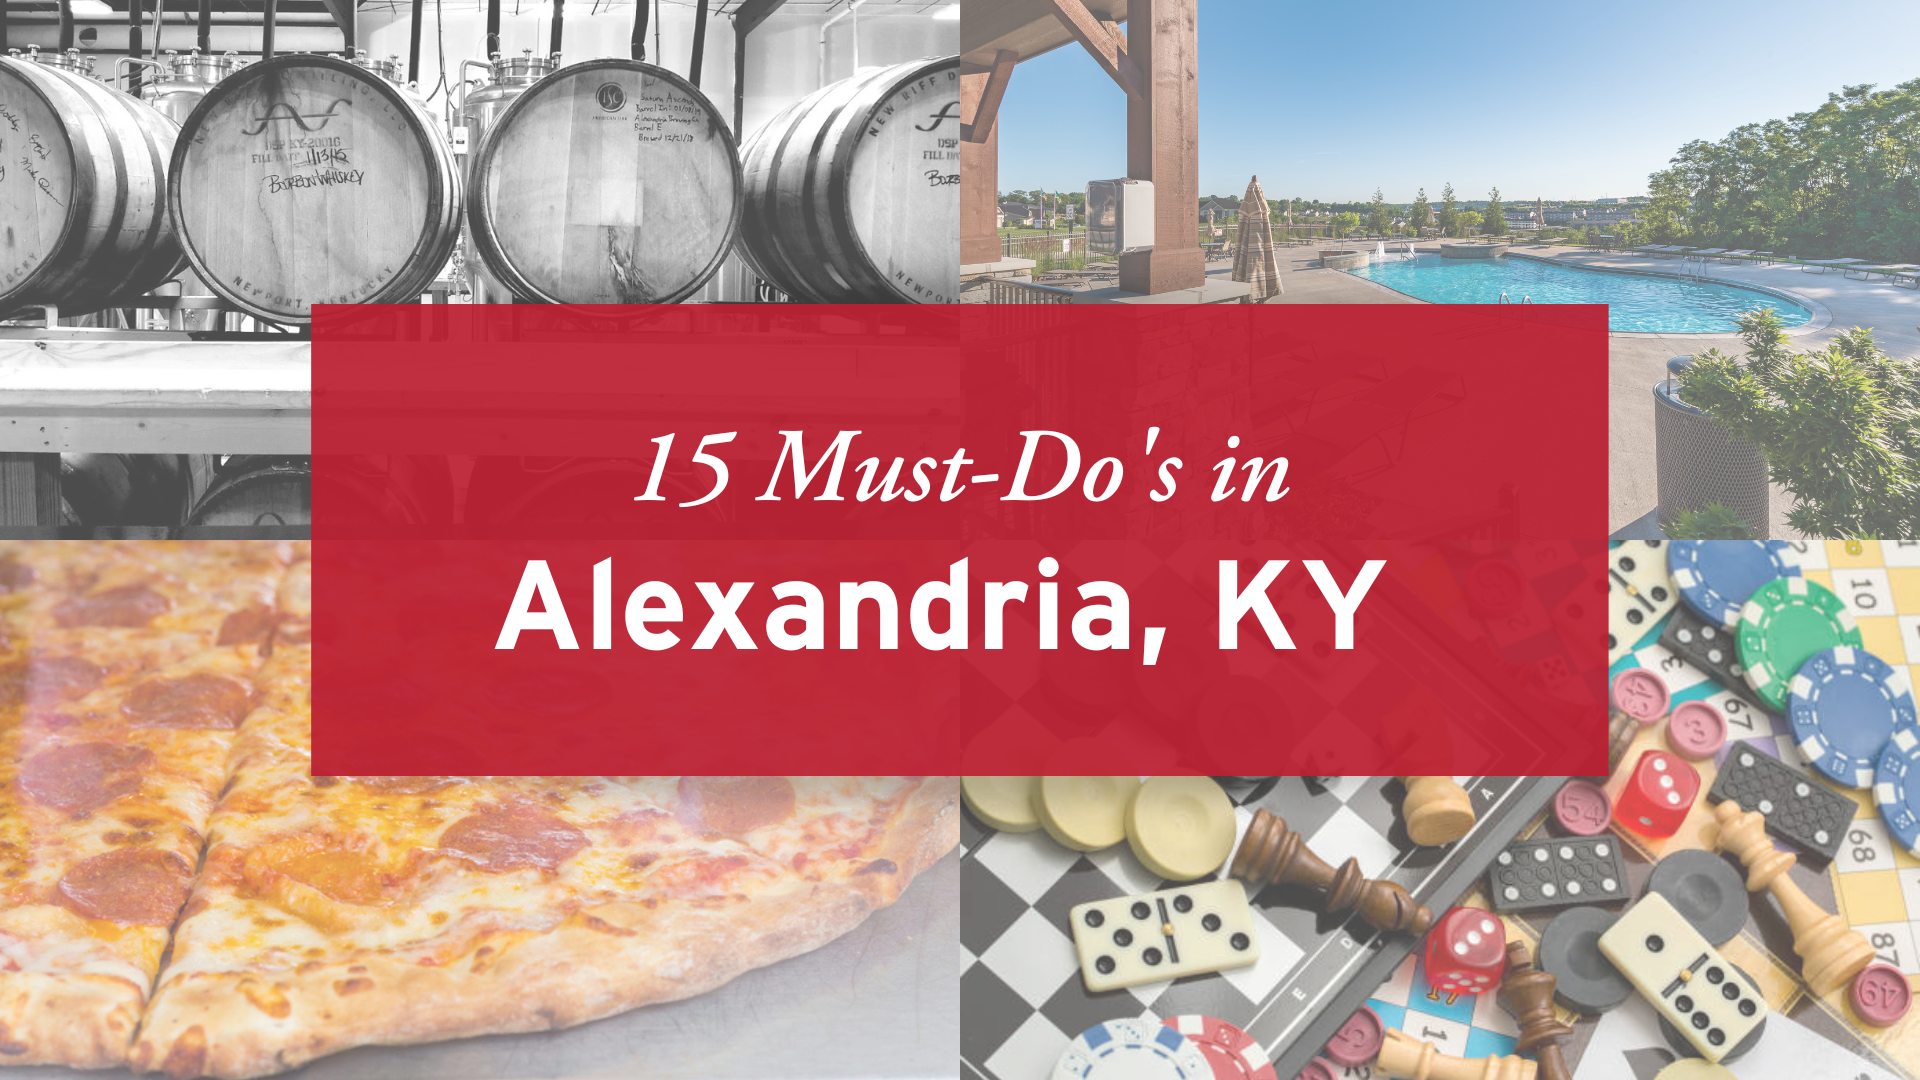 15 Must-Do's in Alexandria, Kentucky!